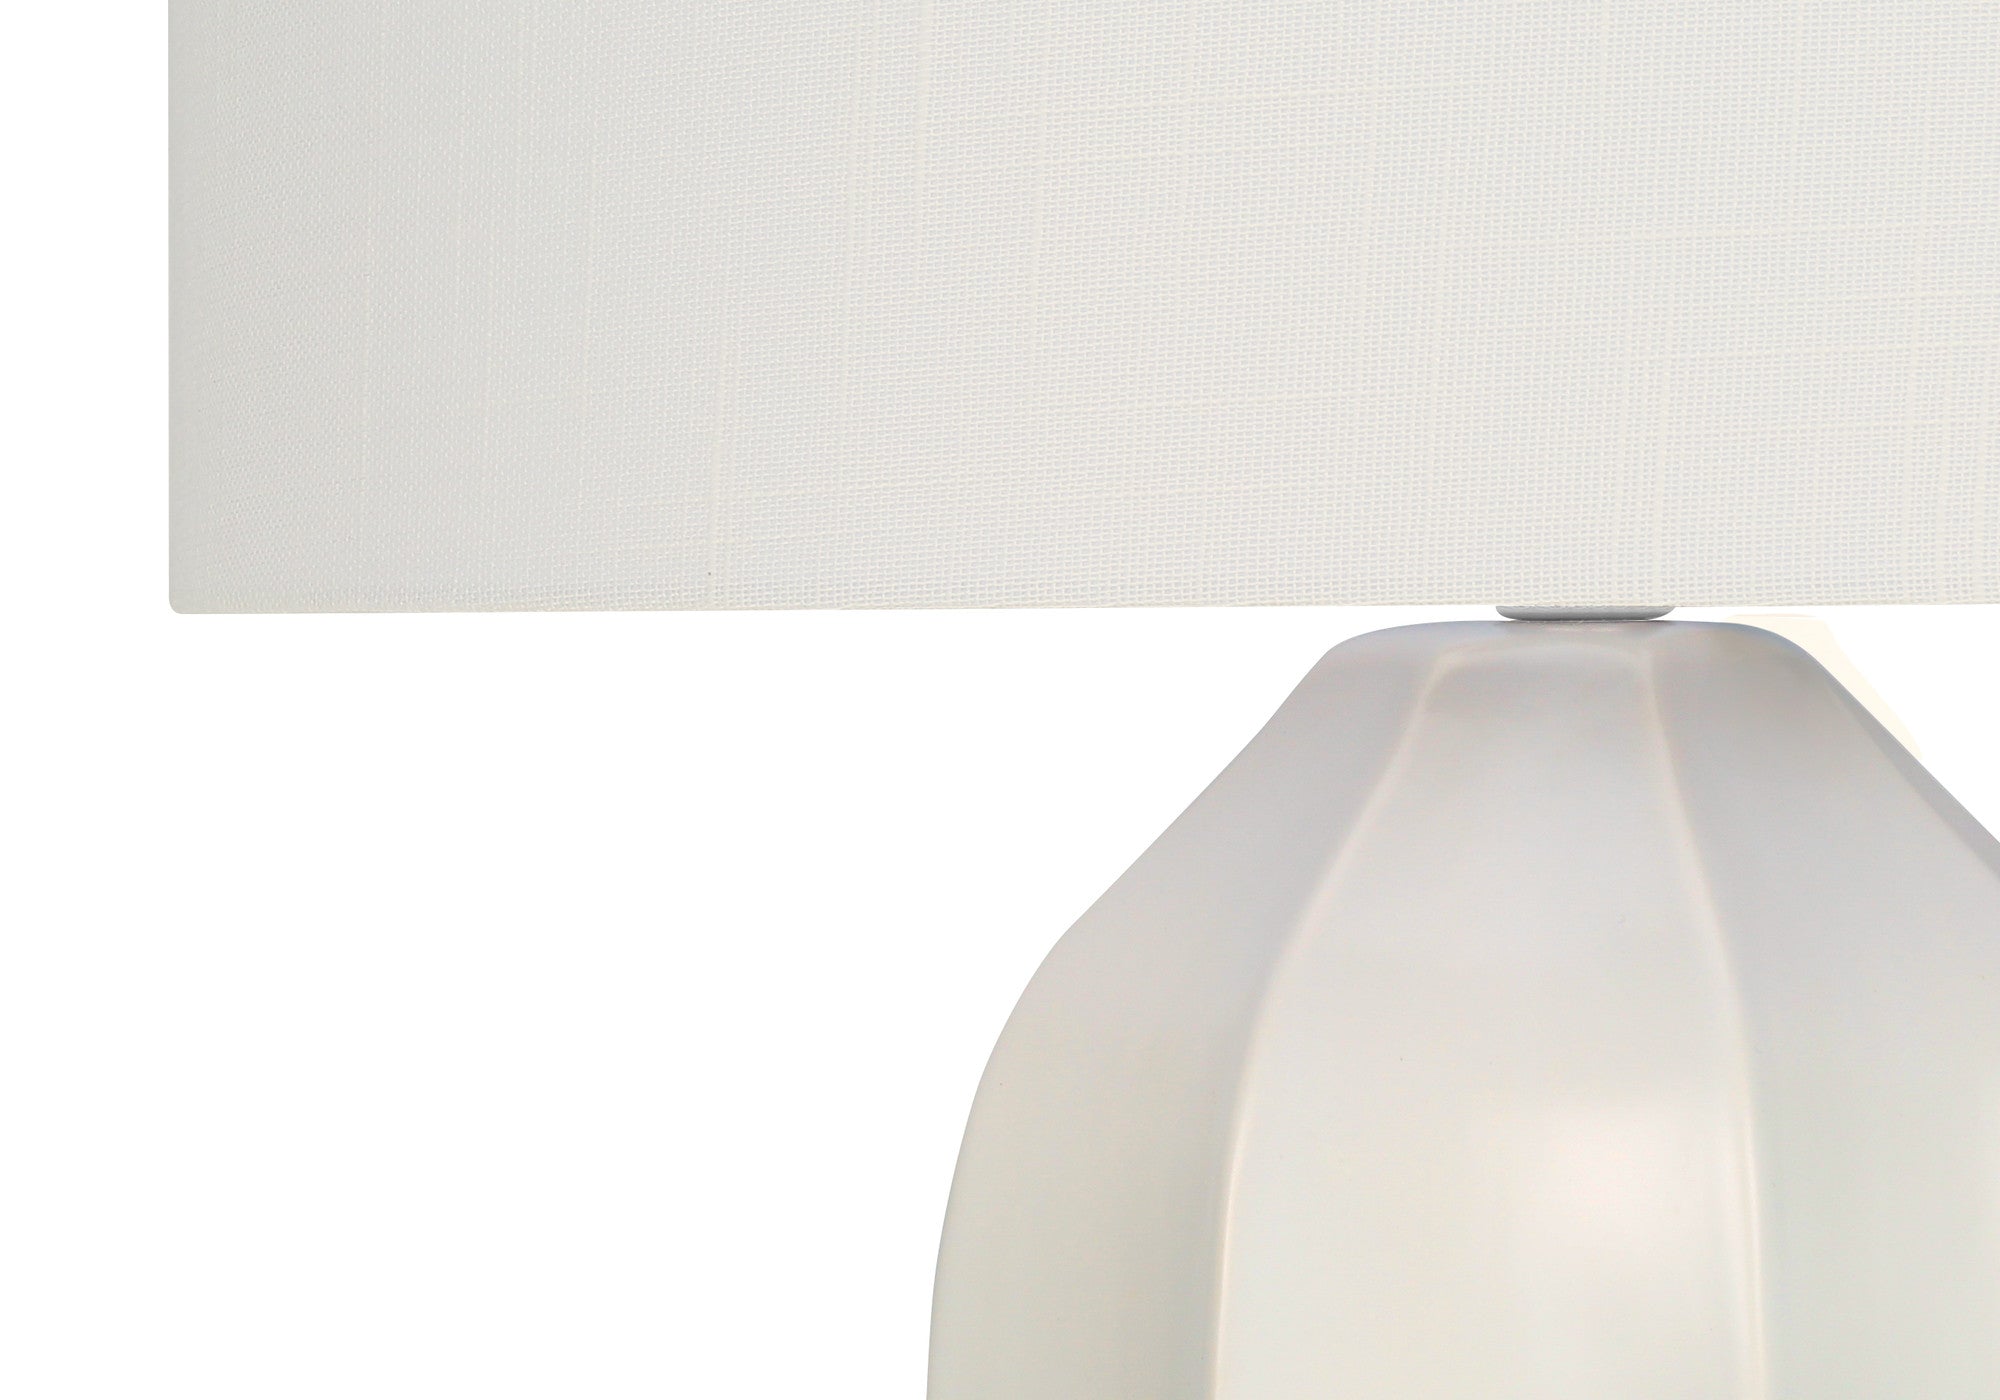 27" Cream Ceramic Geometric Table Lamp With Cream Drum Shade